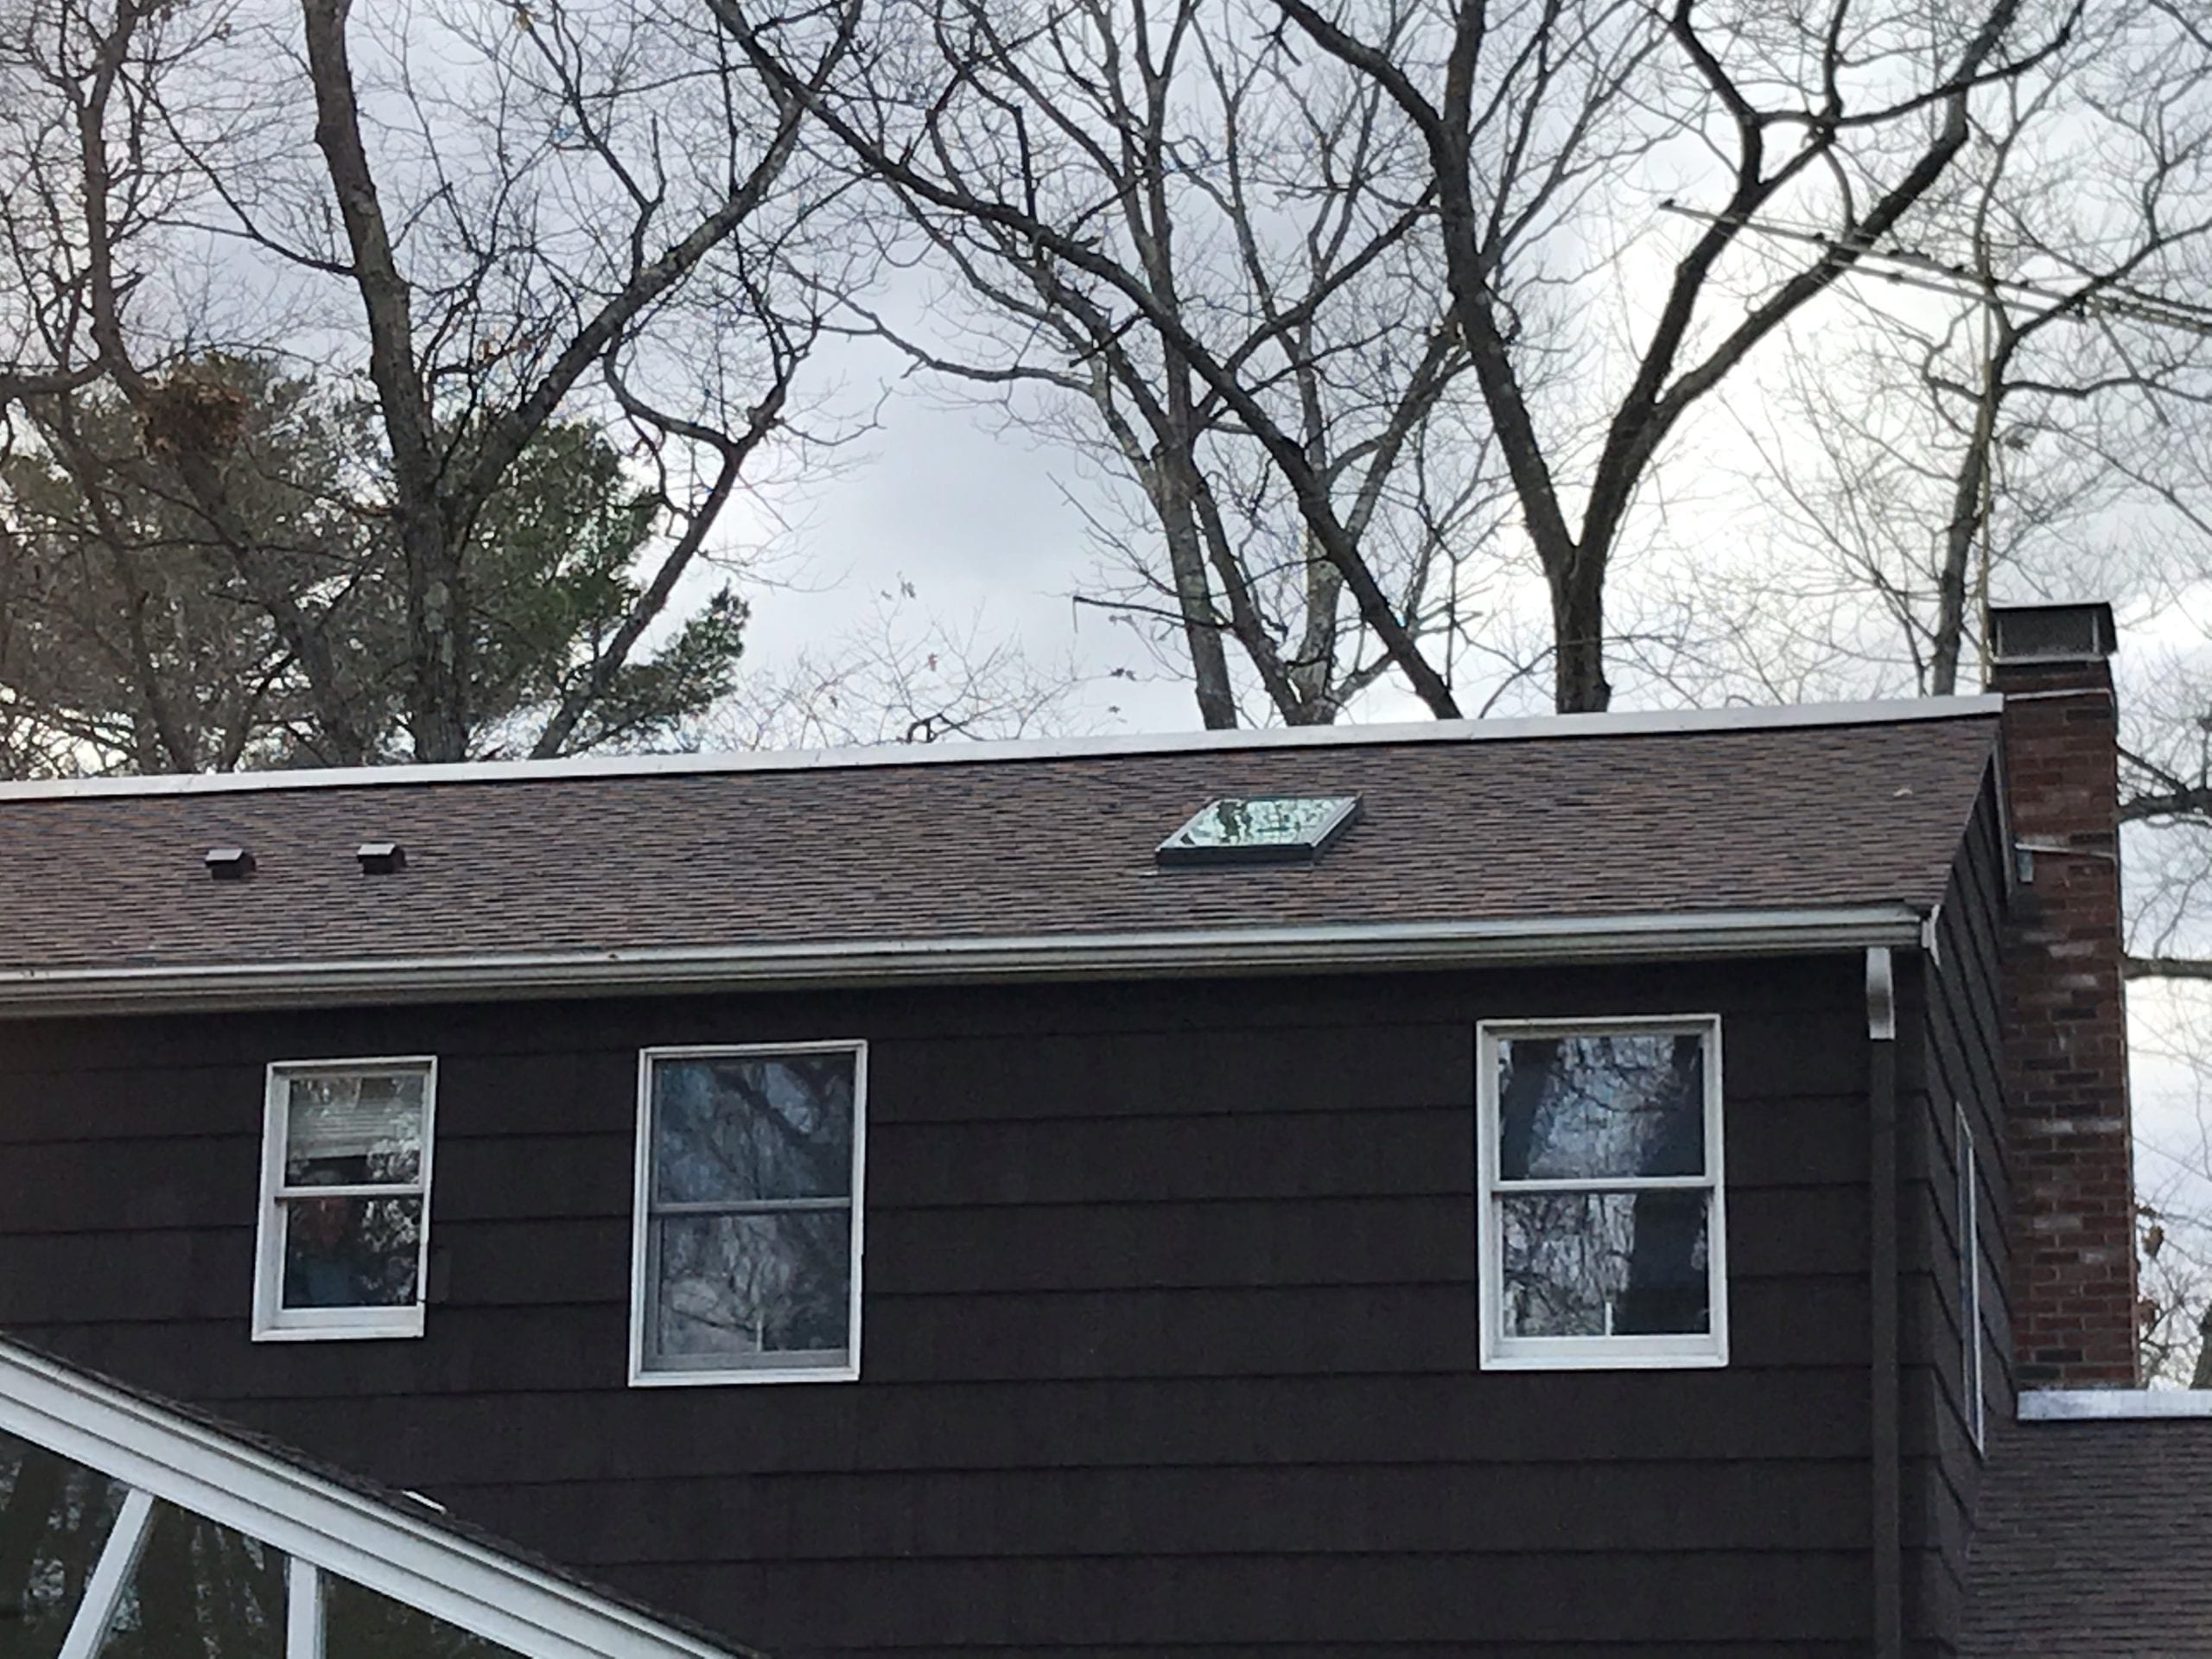 Brand new asphalt shingle roof.